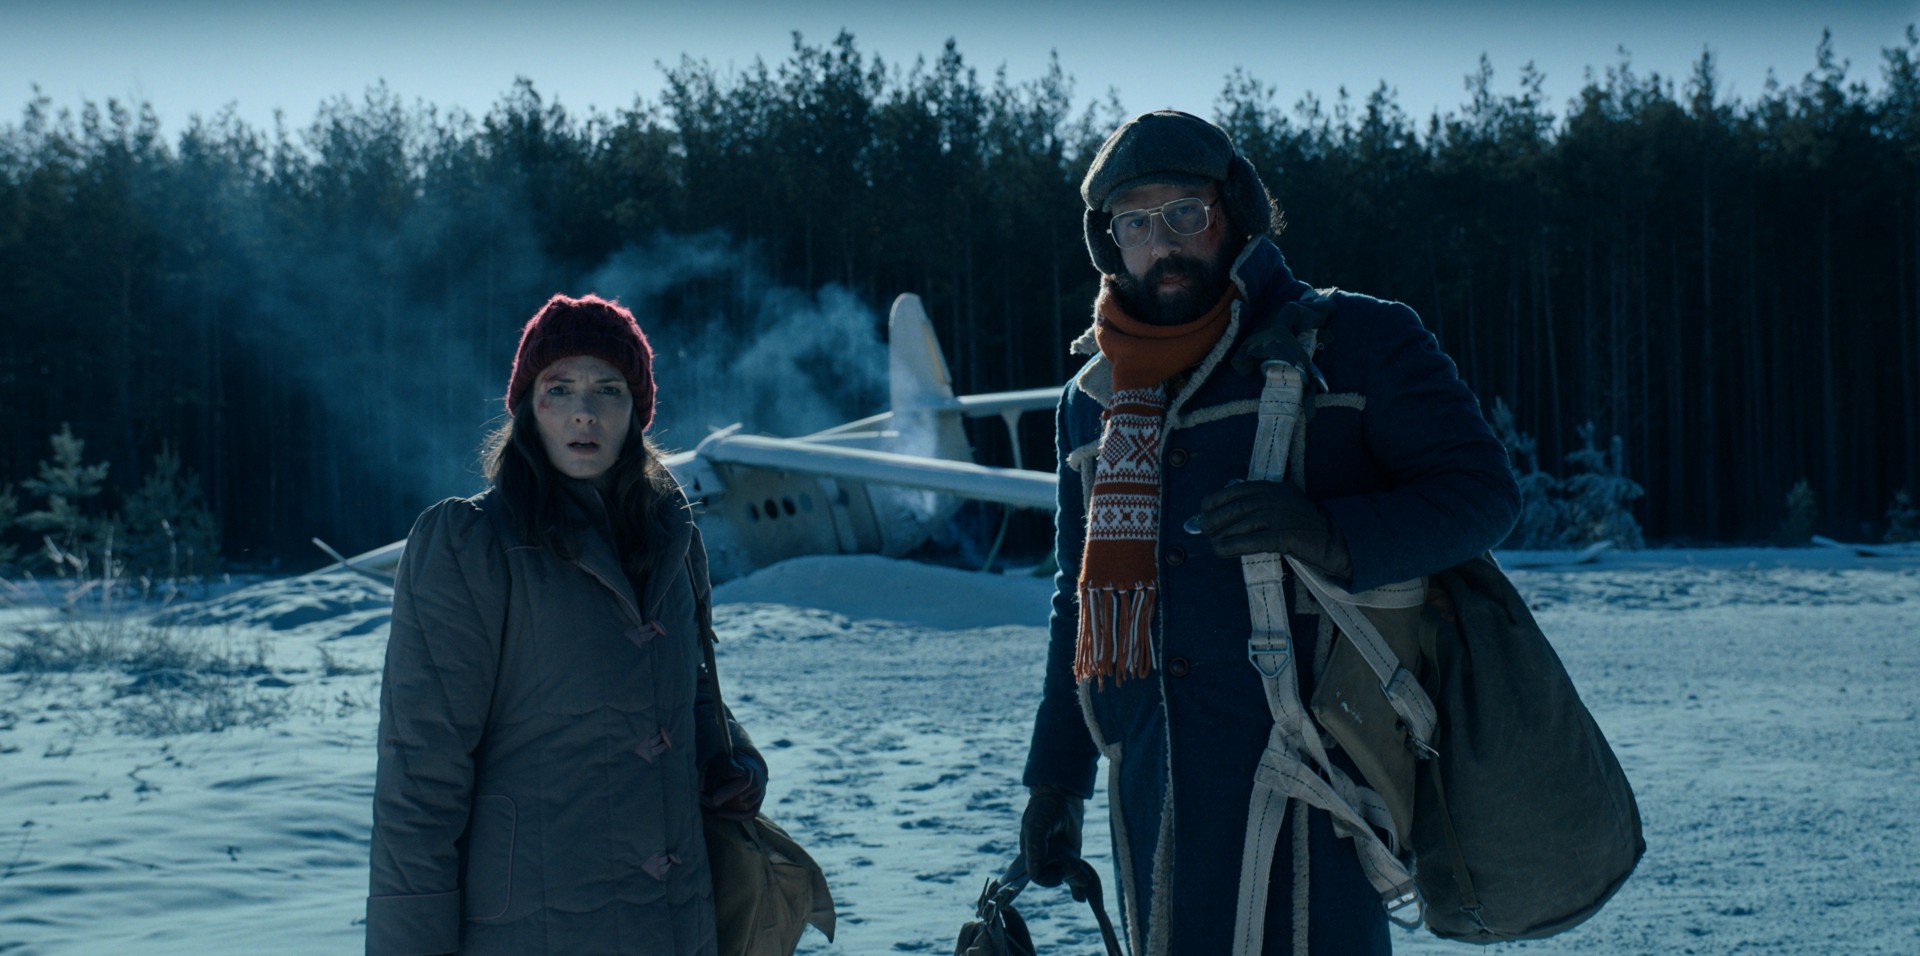 Winona Ryder e Brett Gelman estão na frente de um avião caído na neve em uma cena de Stranger Things 4.